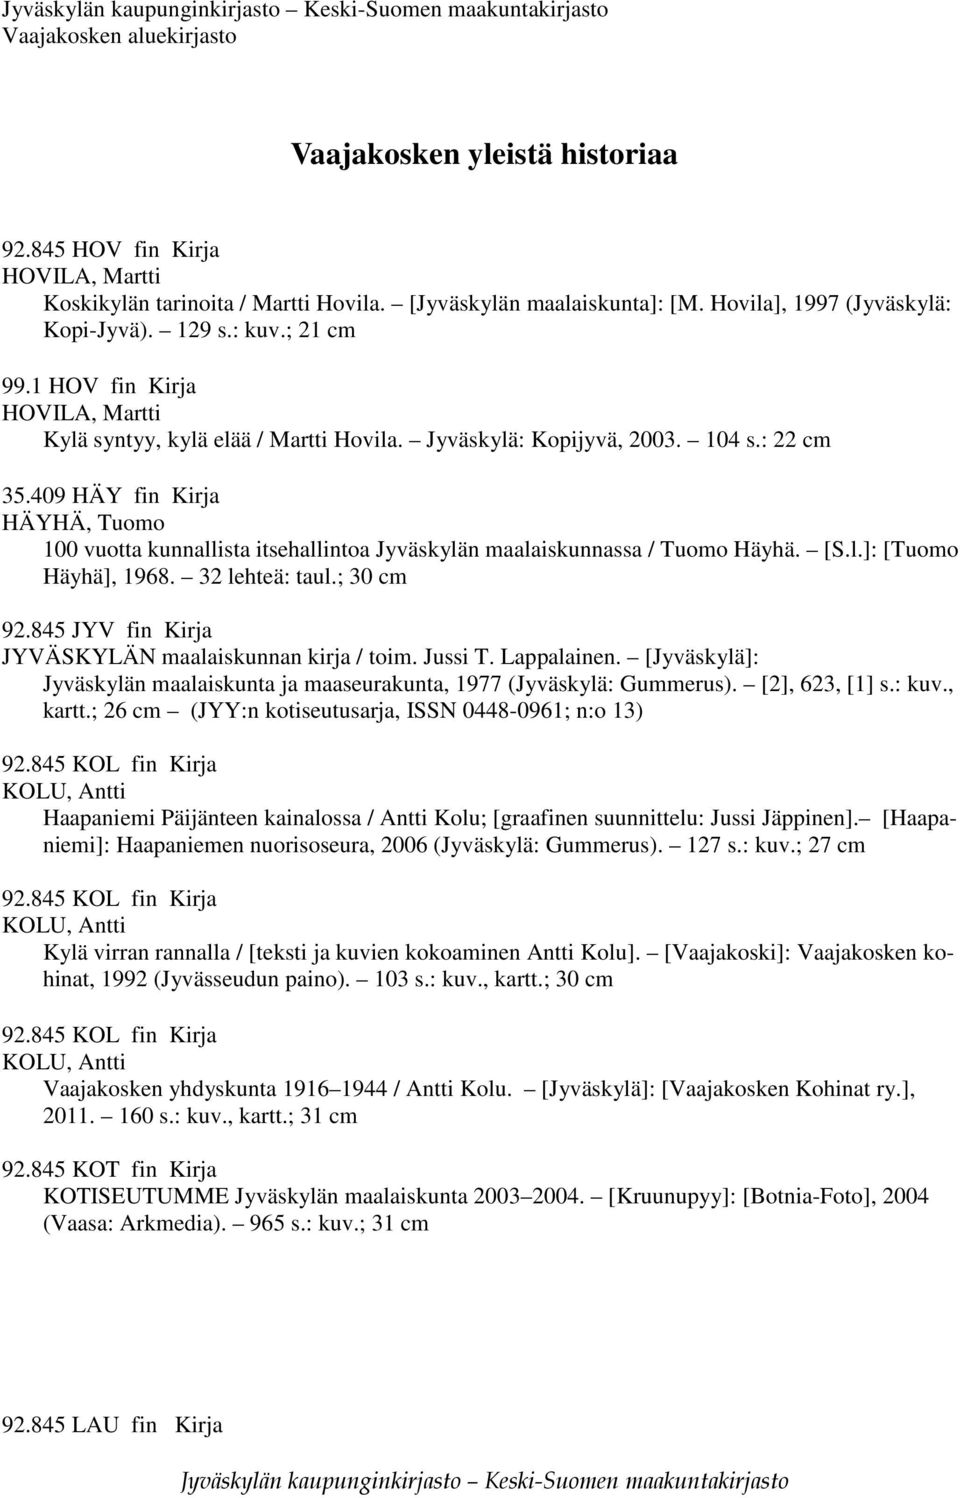 409 HÄY fin Kirja HÄYHÄ, Tuomo 100 vuotta kunnallista itsehallintoa Jyväskylän maalaiskunnassa / Tuomo Häyhä. [S.l.]: [Tuomo Häyhä], 1968. 32 lehteä: taul.; 30 cm 92.